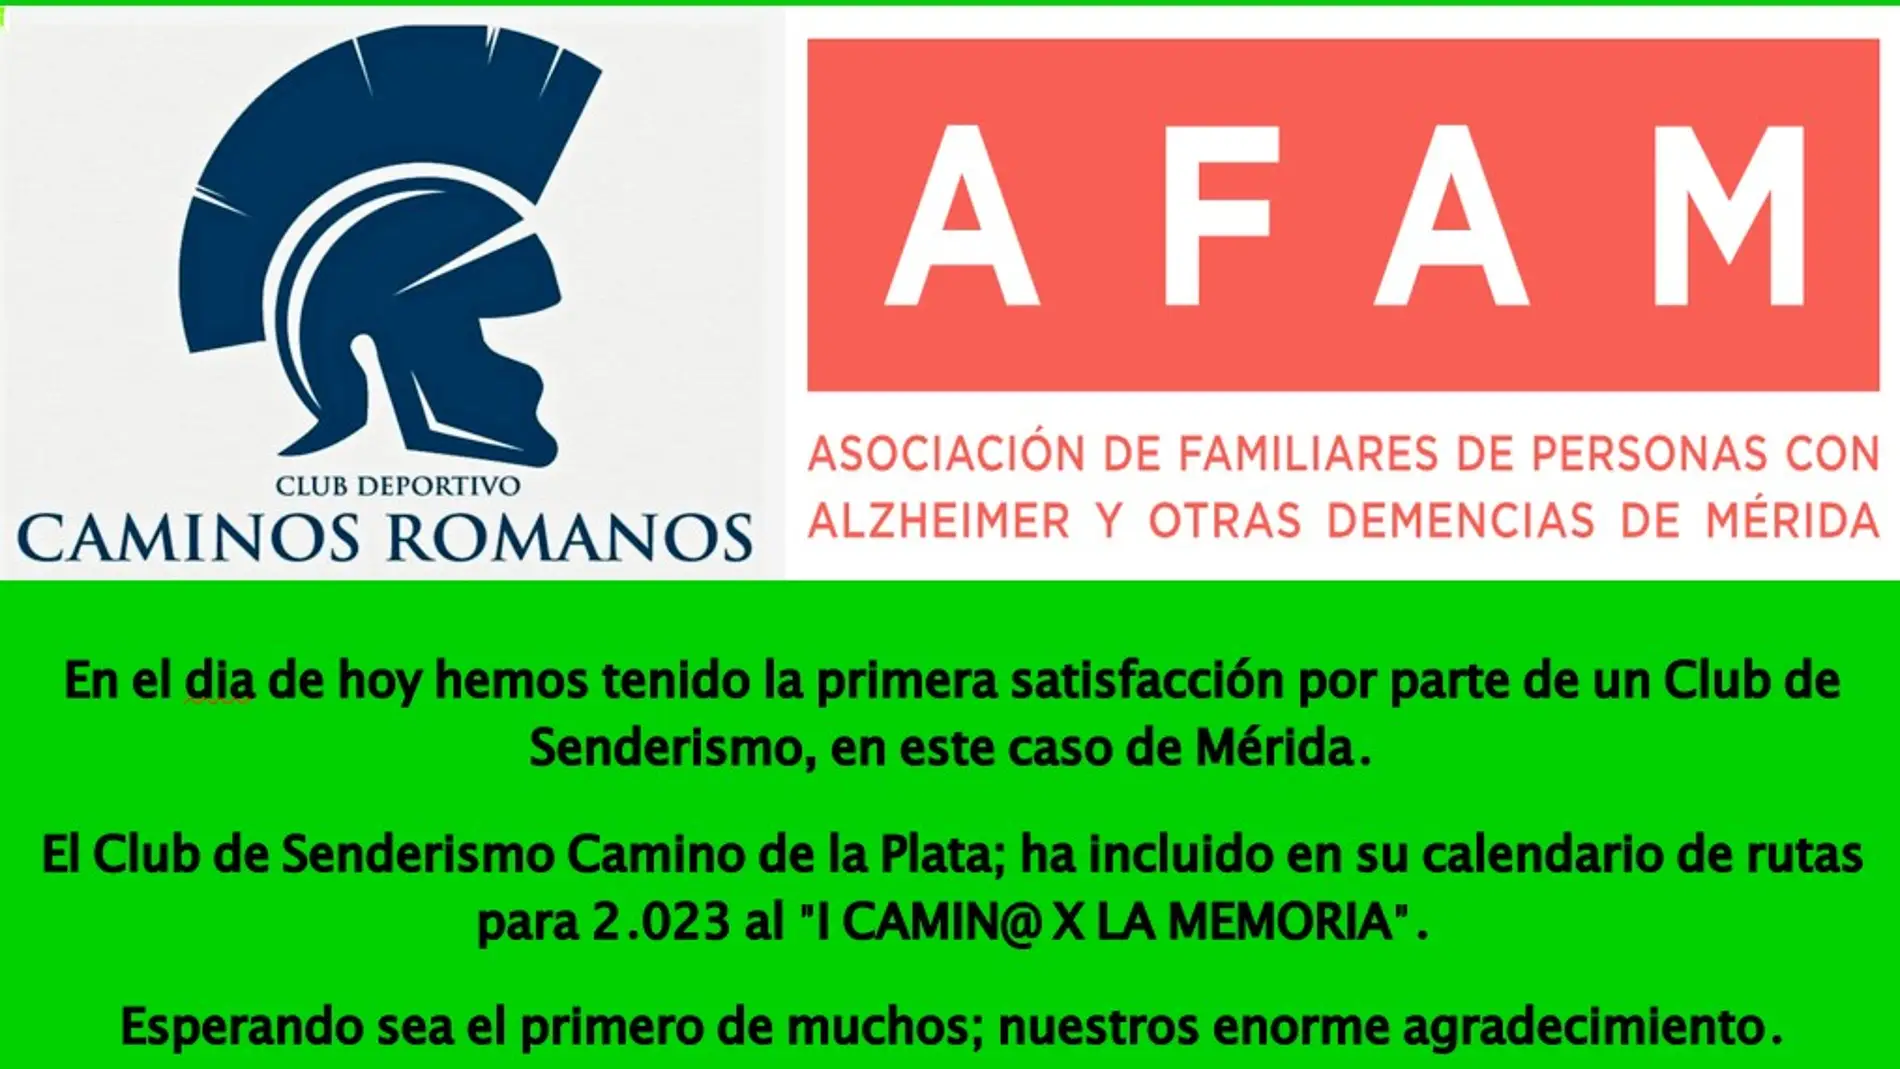 El 16 de Abril se celebrará en Mérida el I CAMIN@ X LA MEMORIA "Embalses Romanos"